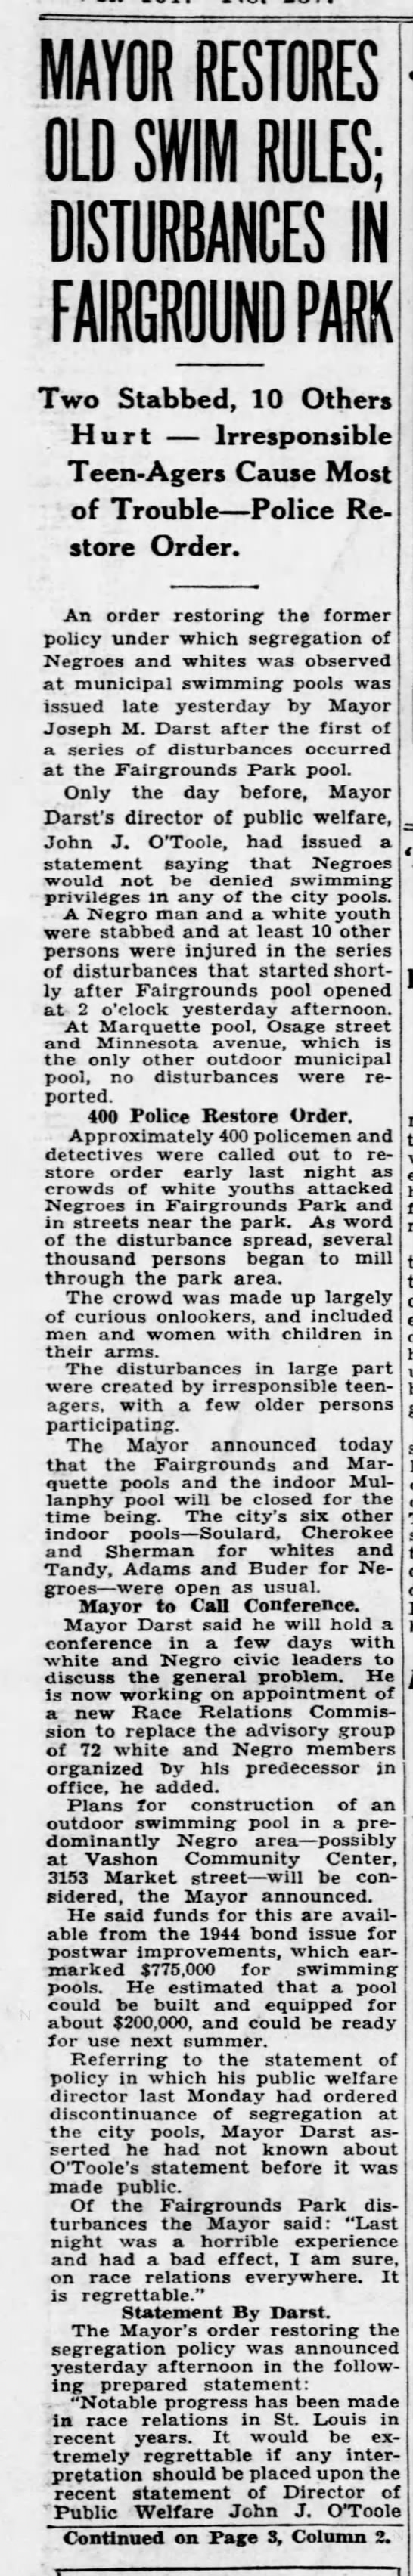 1949 Fairgrounds Park Riot - 